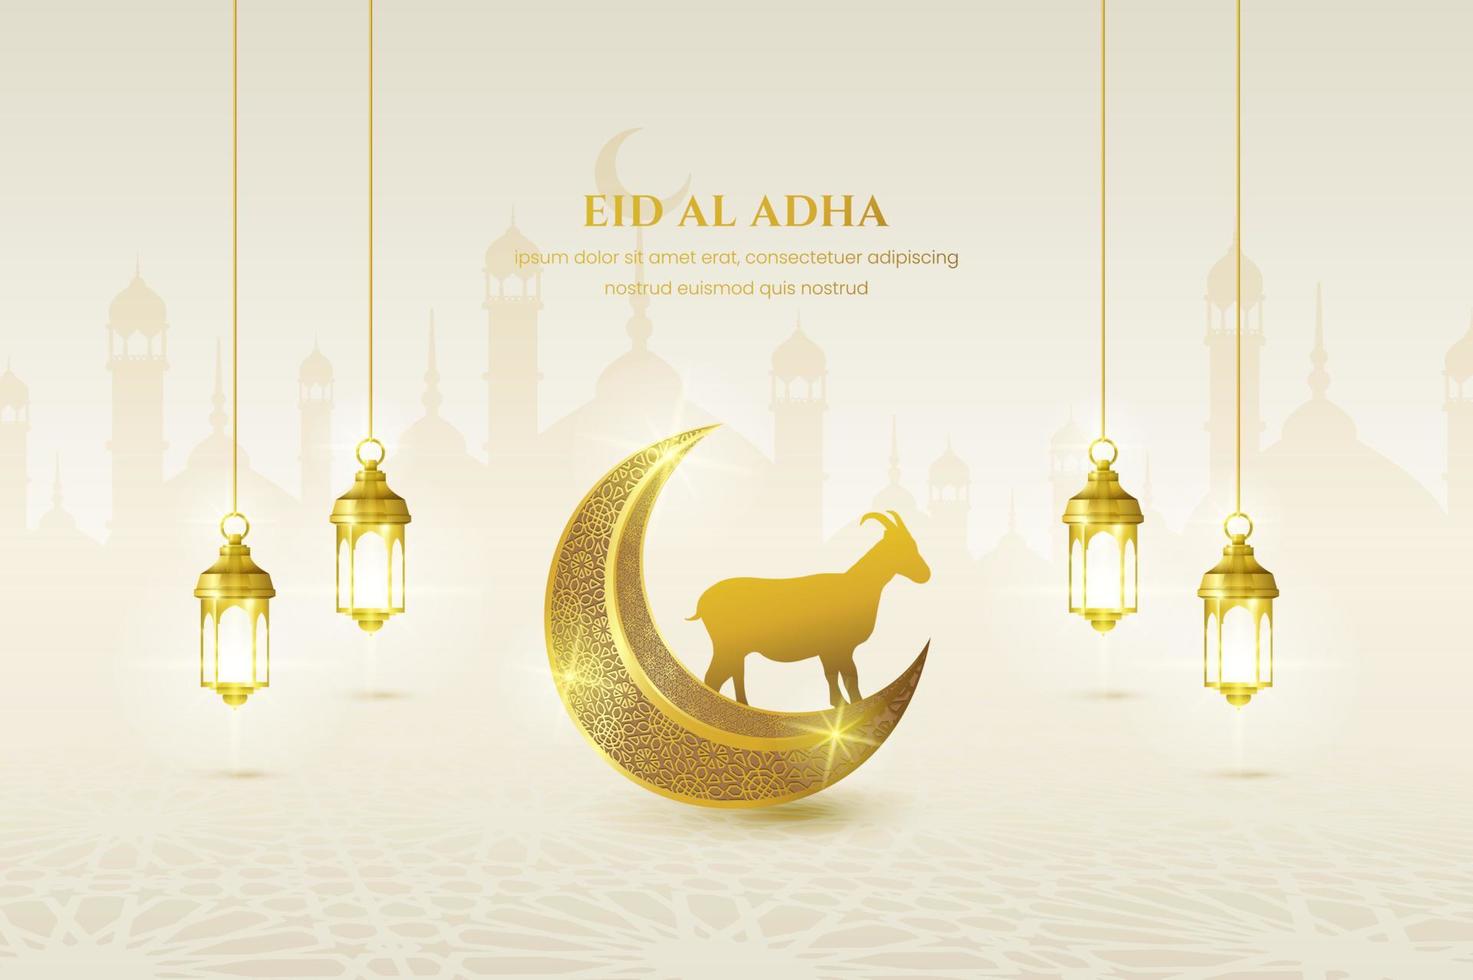 eid mubarak biglietto di auguri islamico, poster, banner design, illustrazione vettoriale